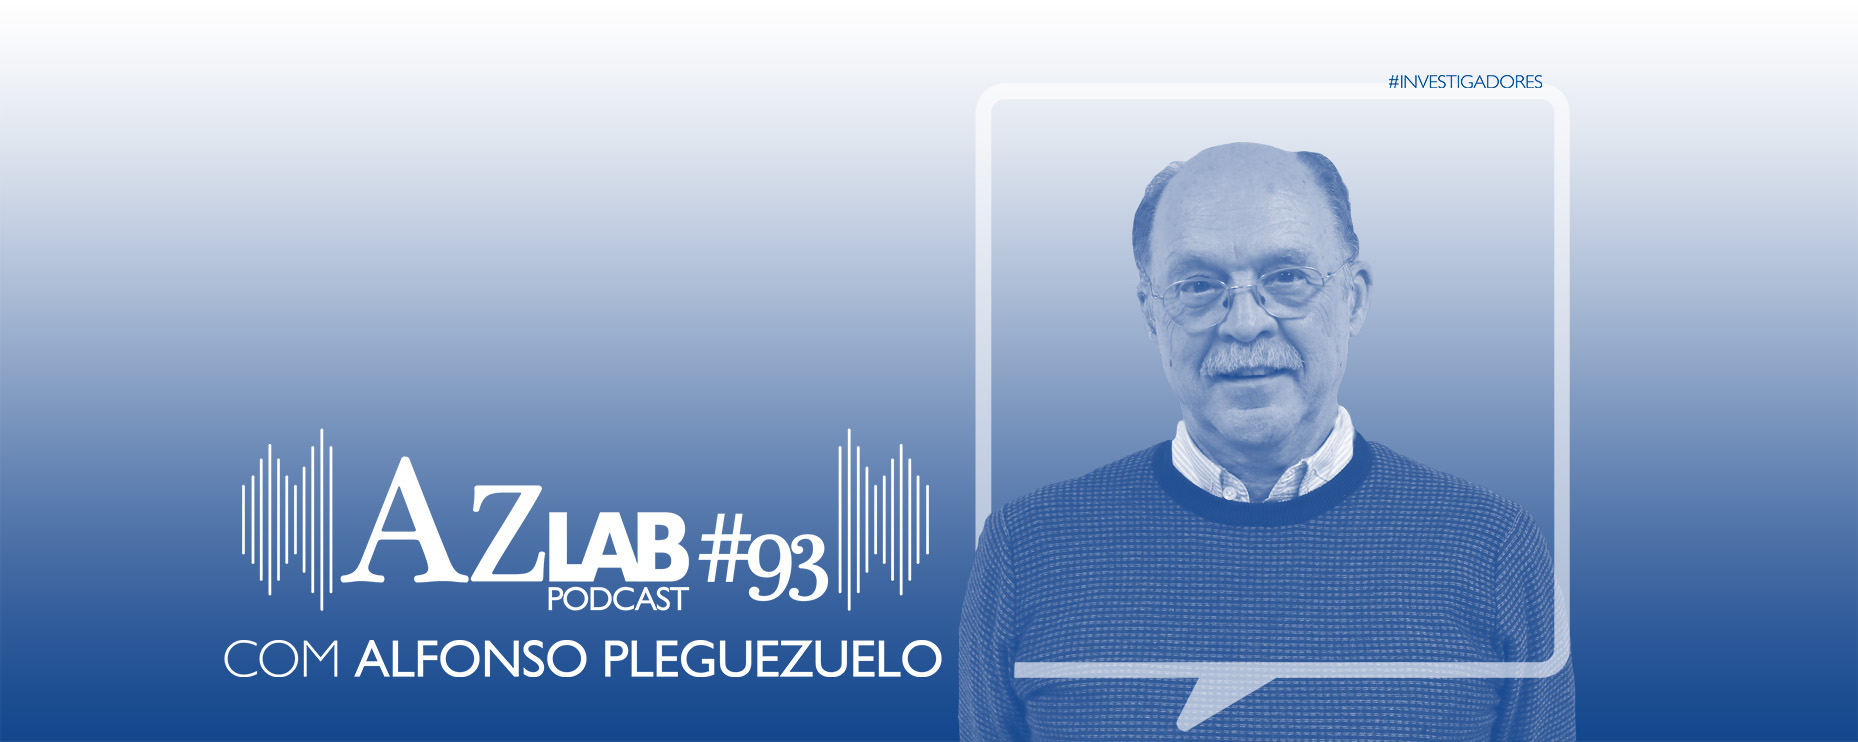 AZLAB#93 [PODCAST] | WITH ALFONSO PLEGUEZUELO